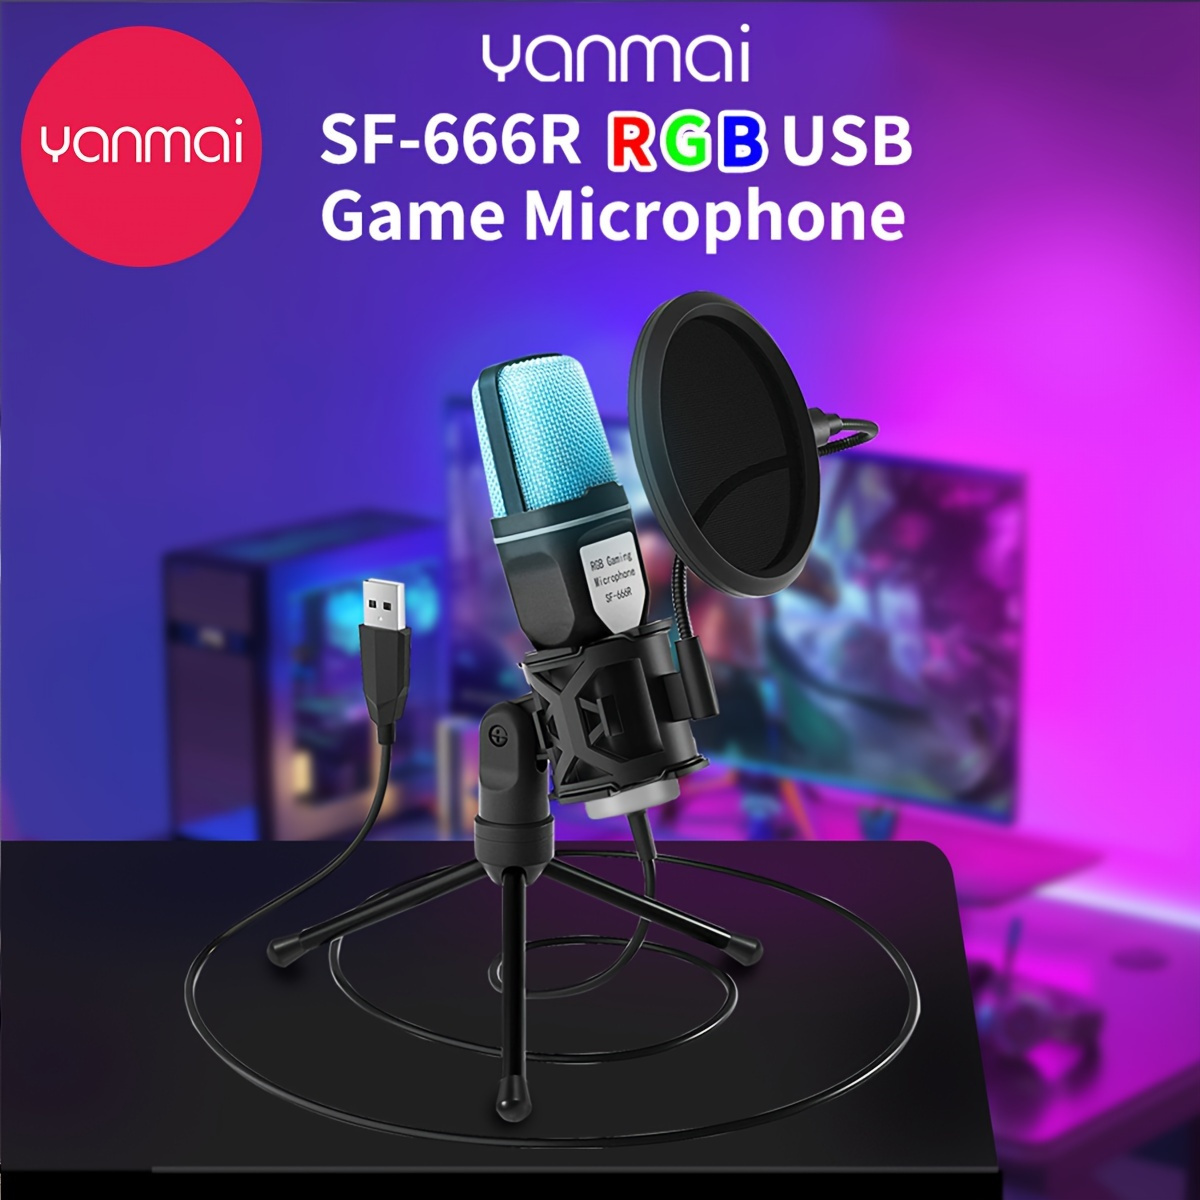 Kit de micro de microphone professionnel pour chanter enregistrement stéréo  Asmr Broadcast